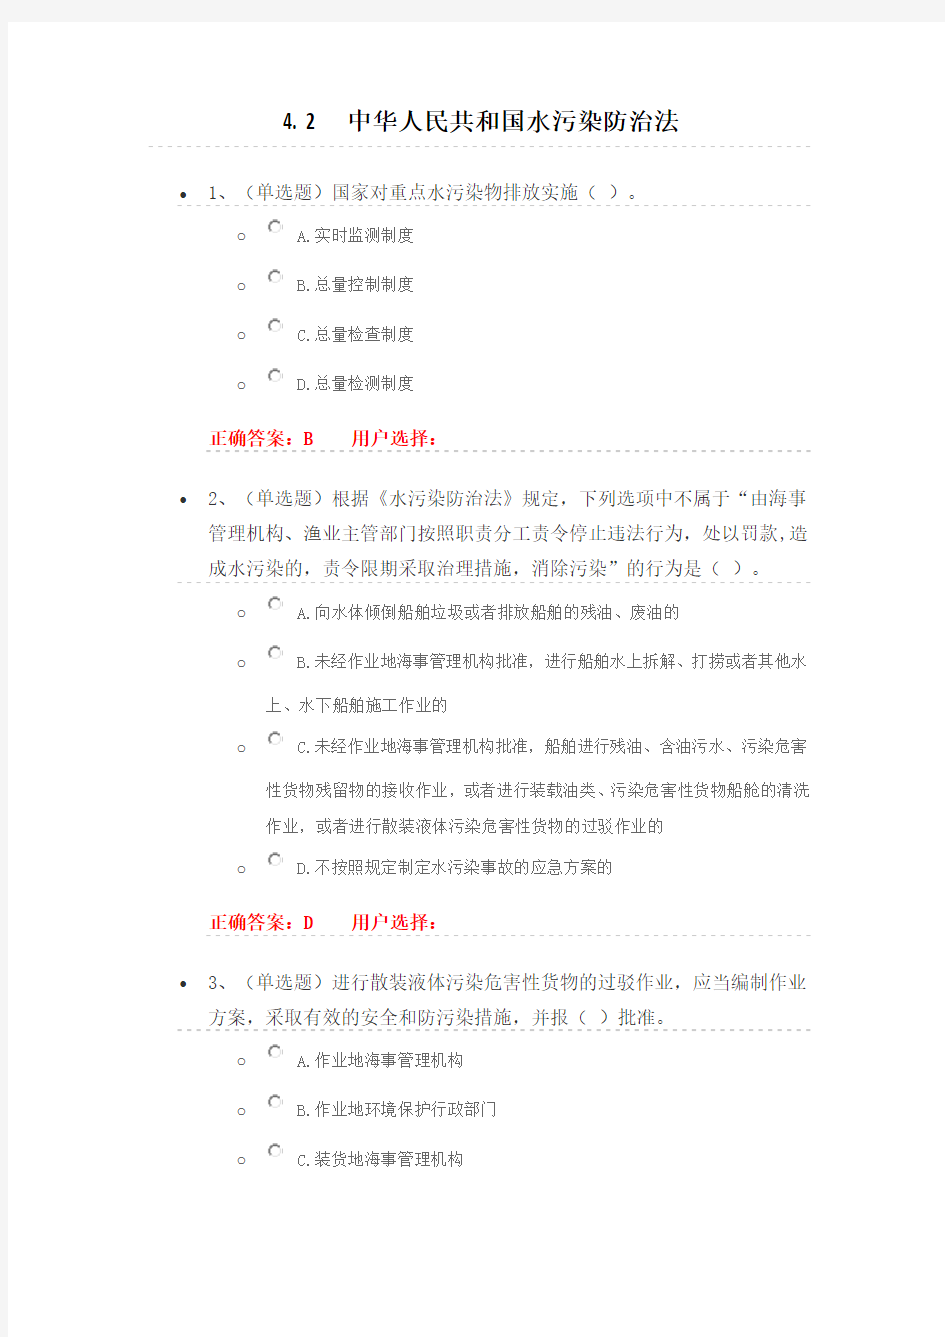 法宣在线_4.2《中华人民共和国水污染防治法》练习题及答案(最新整理)